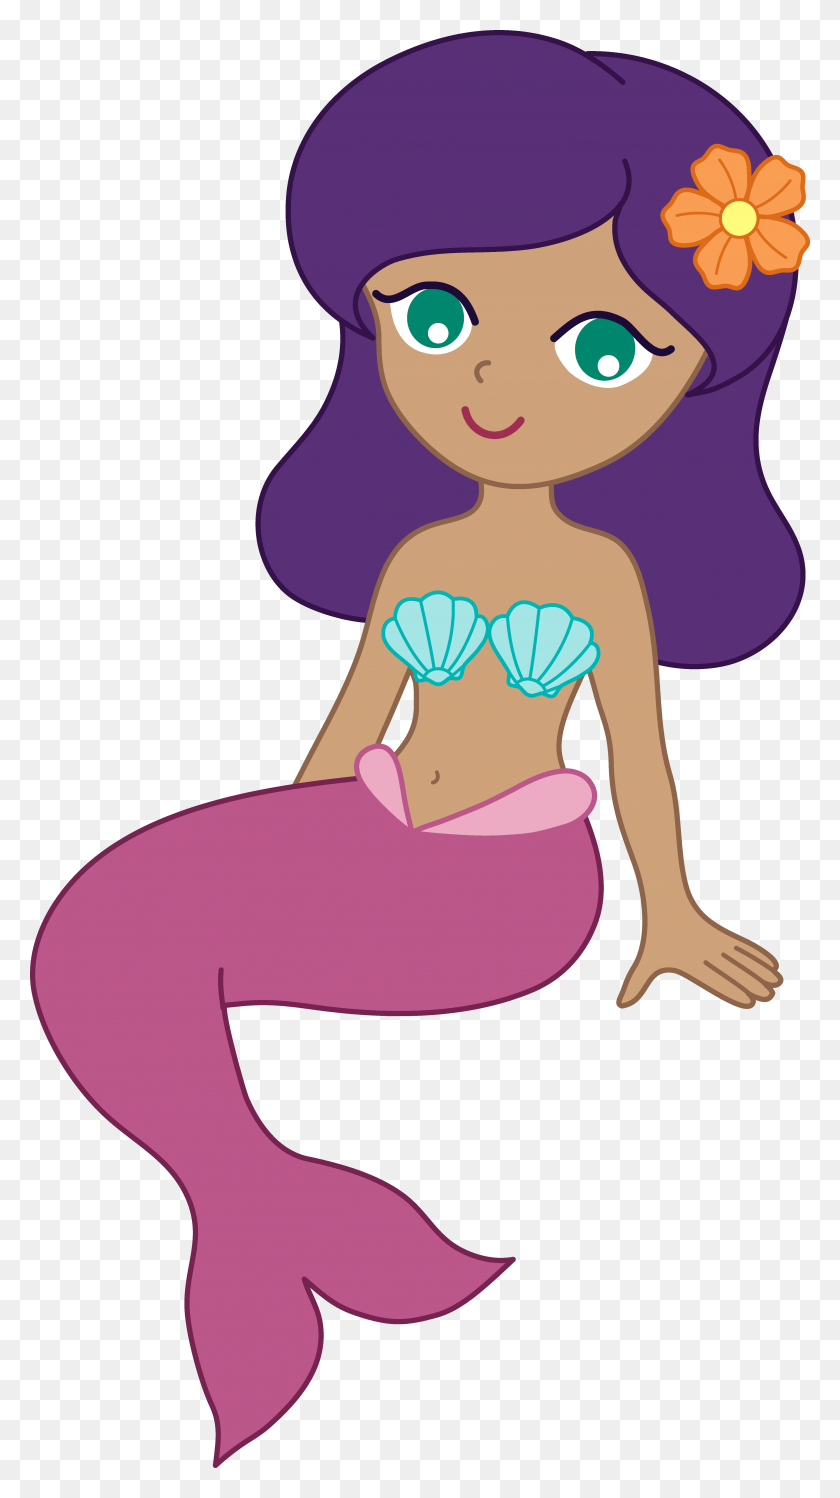 Cute Cartoon Mermaid Clipart - Mermaid Images Clip Art